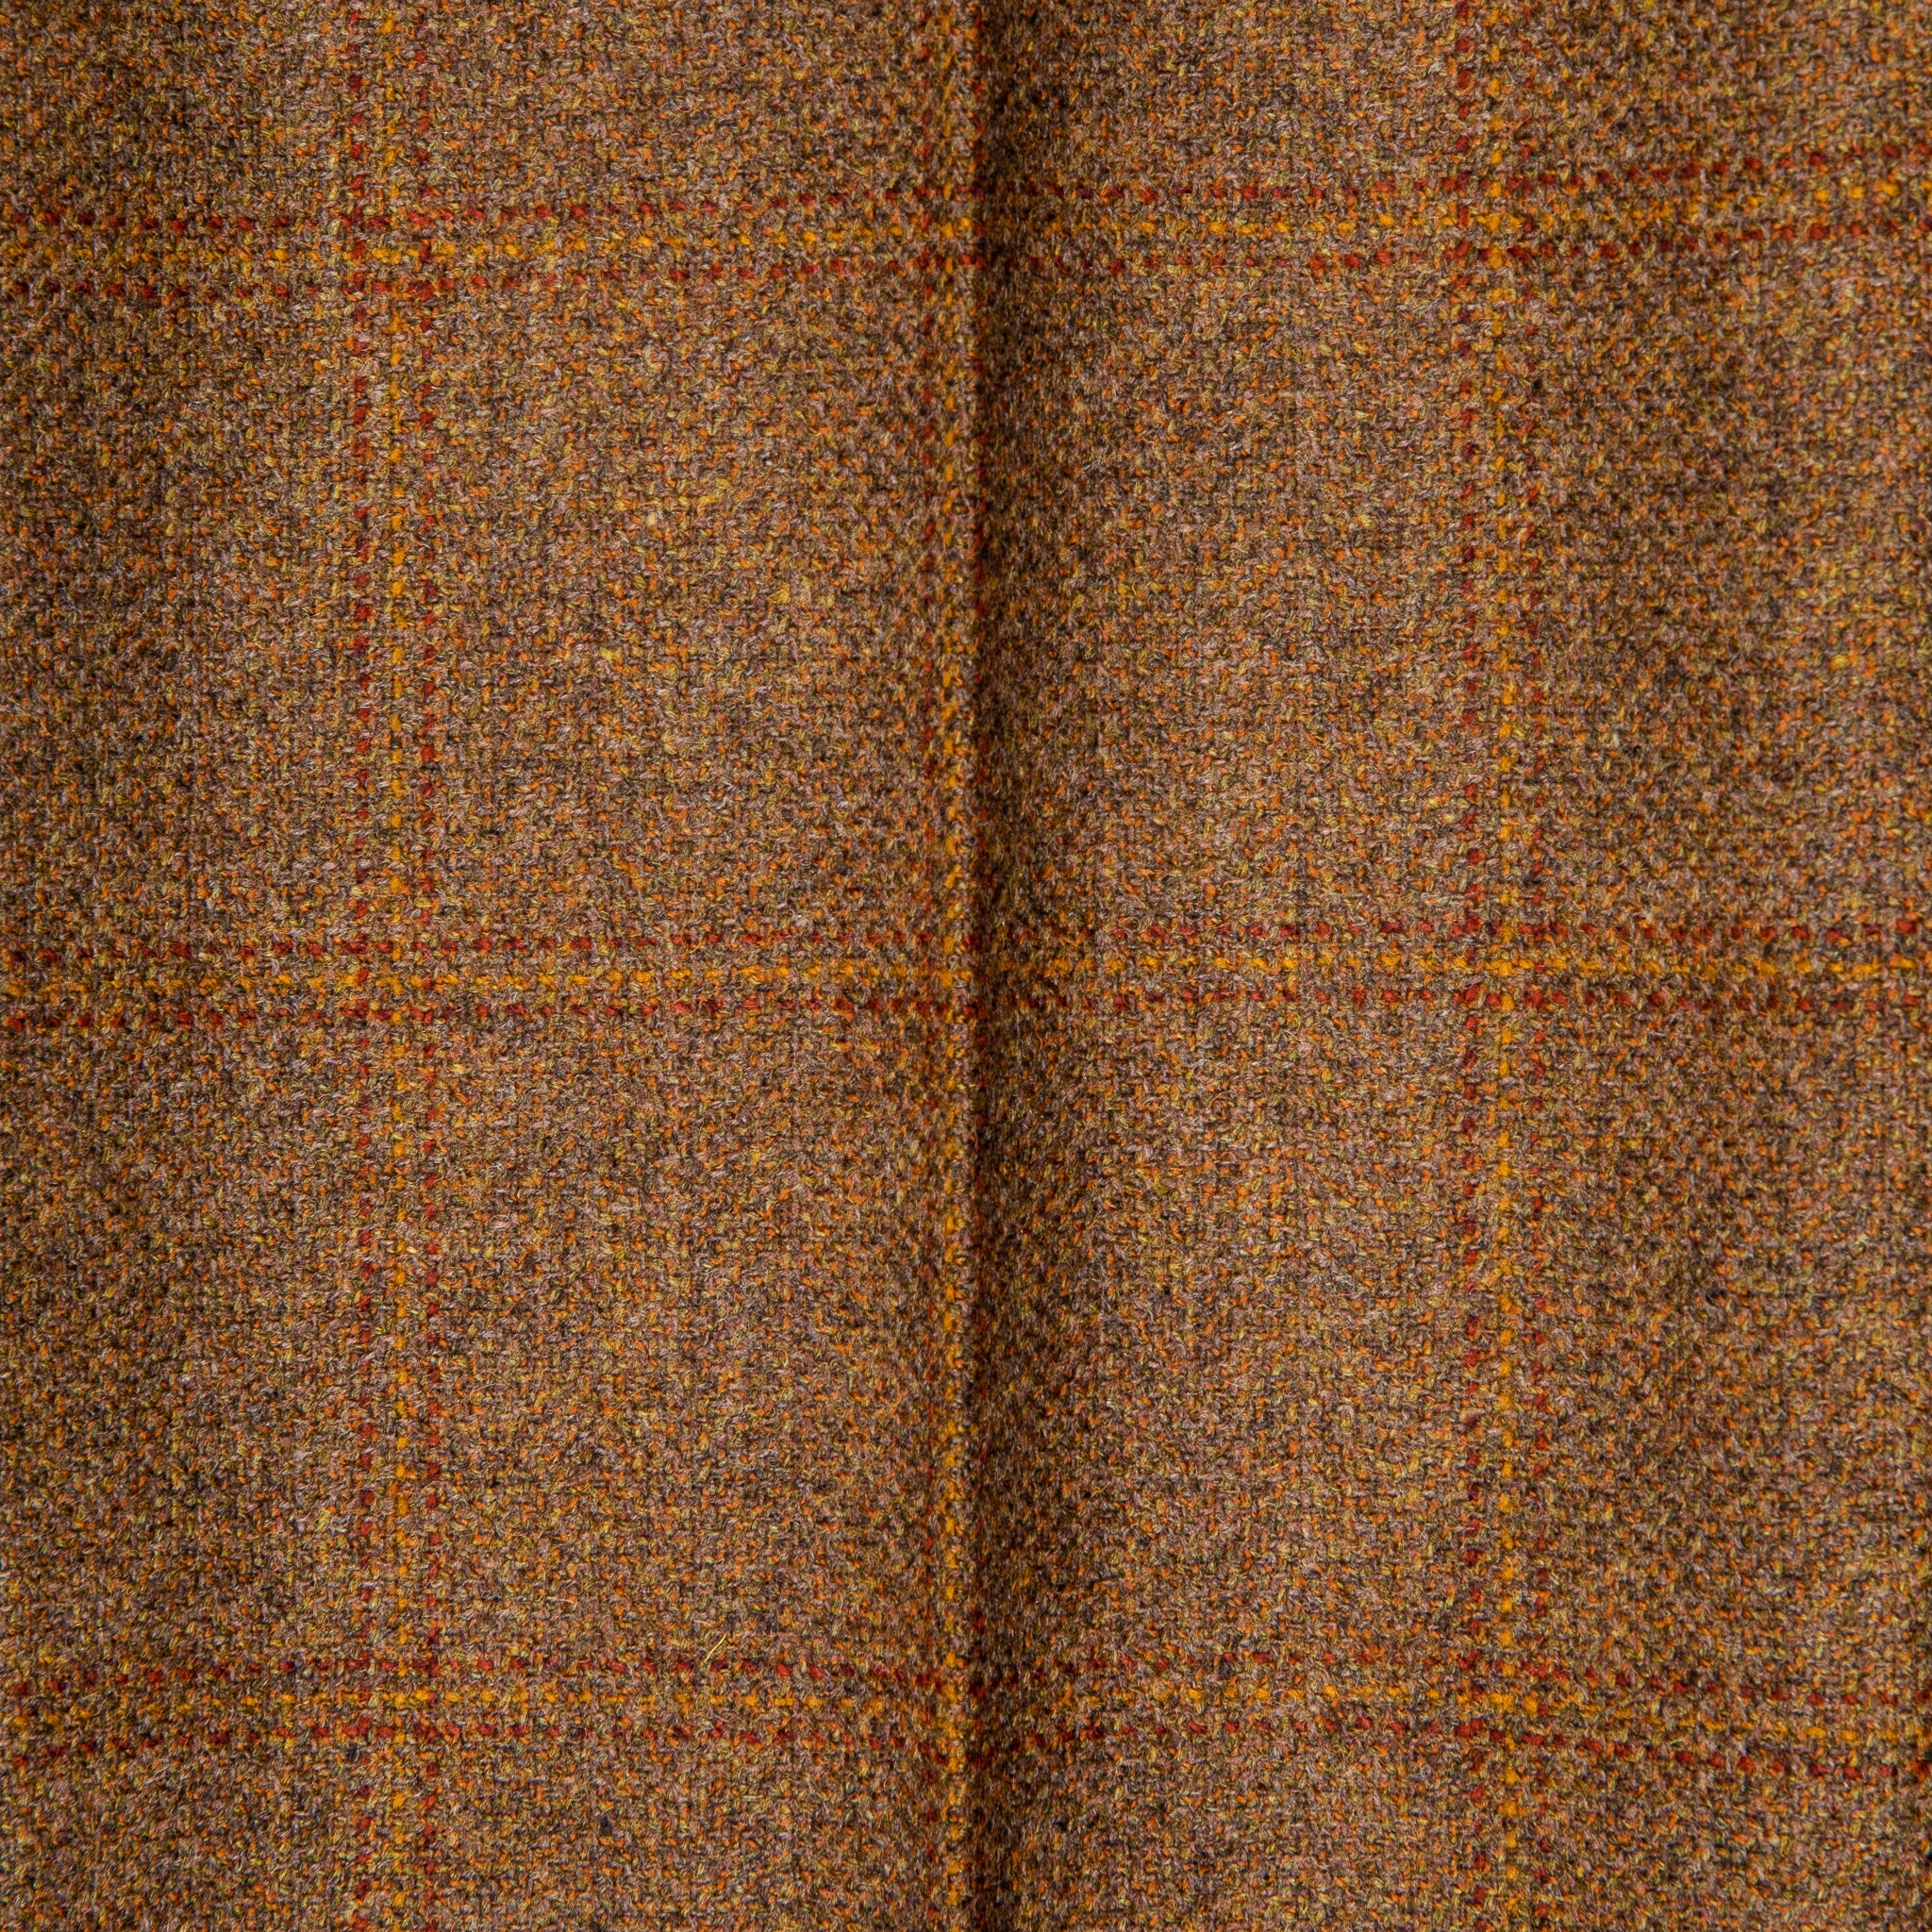 Orgueil OR-1092 Lovat Tweed Trousers L. Brown